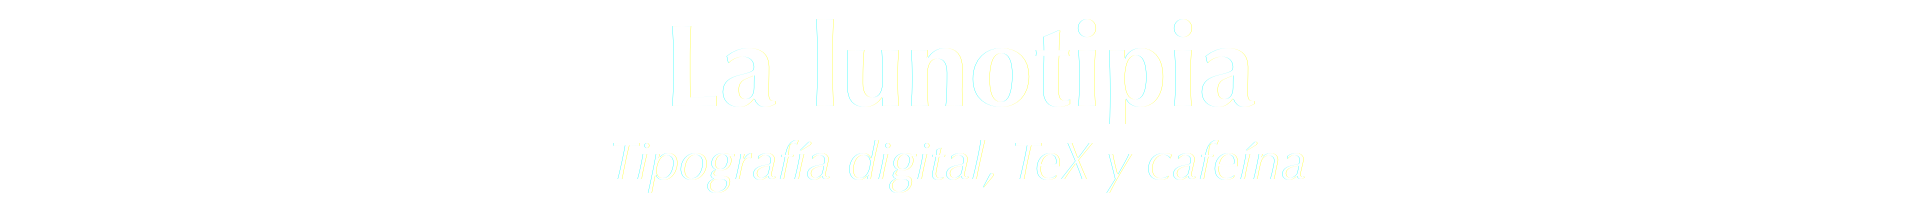 La lunotipia. Tipografía digital, TeX y cafeína